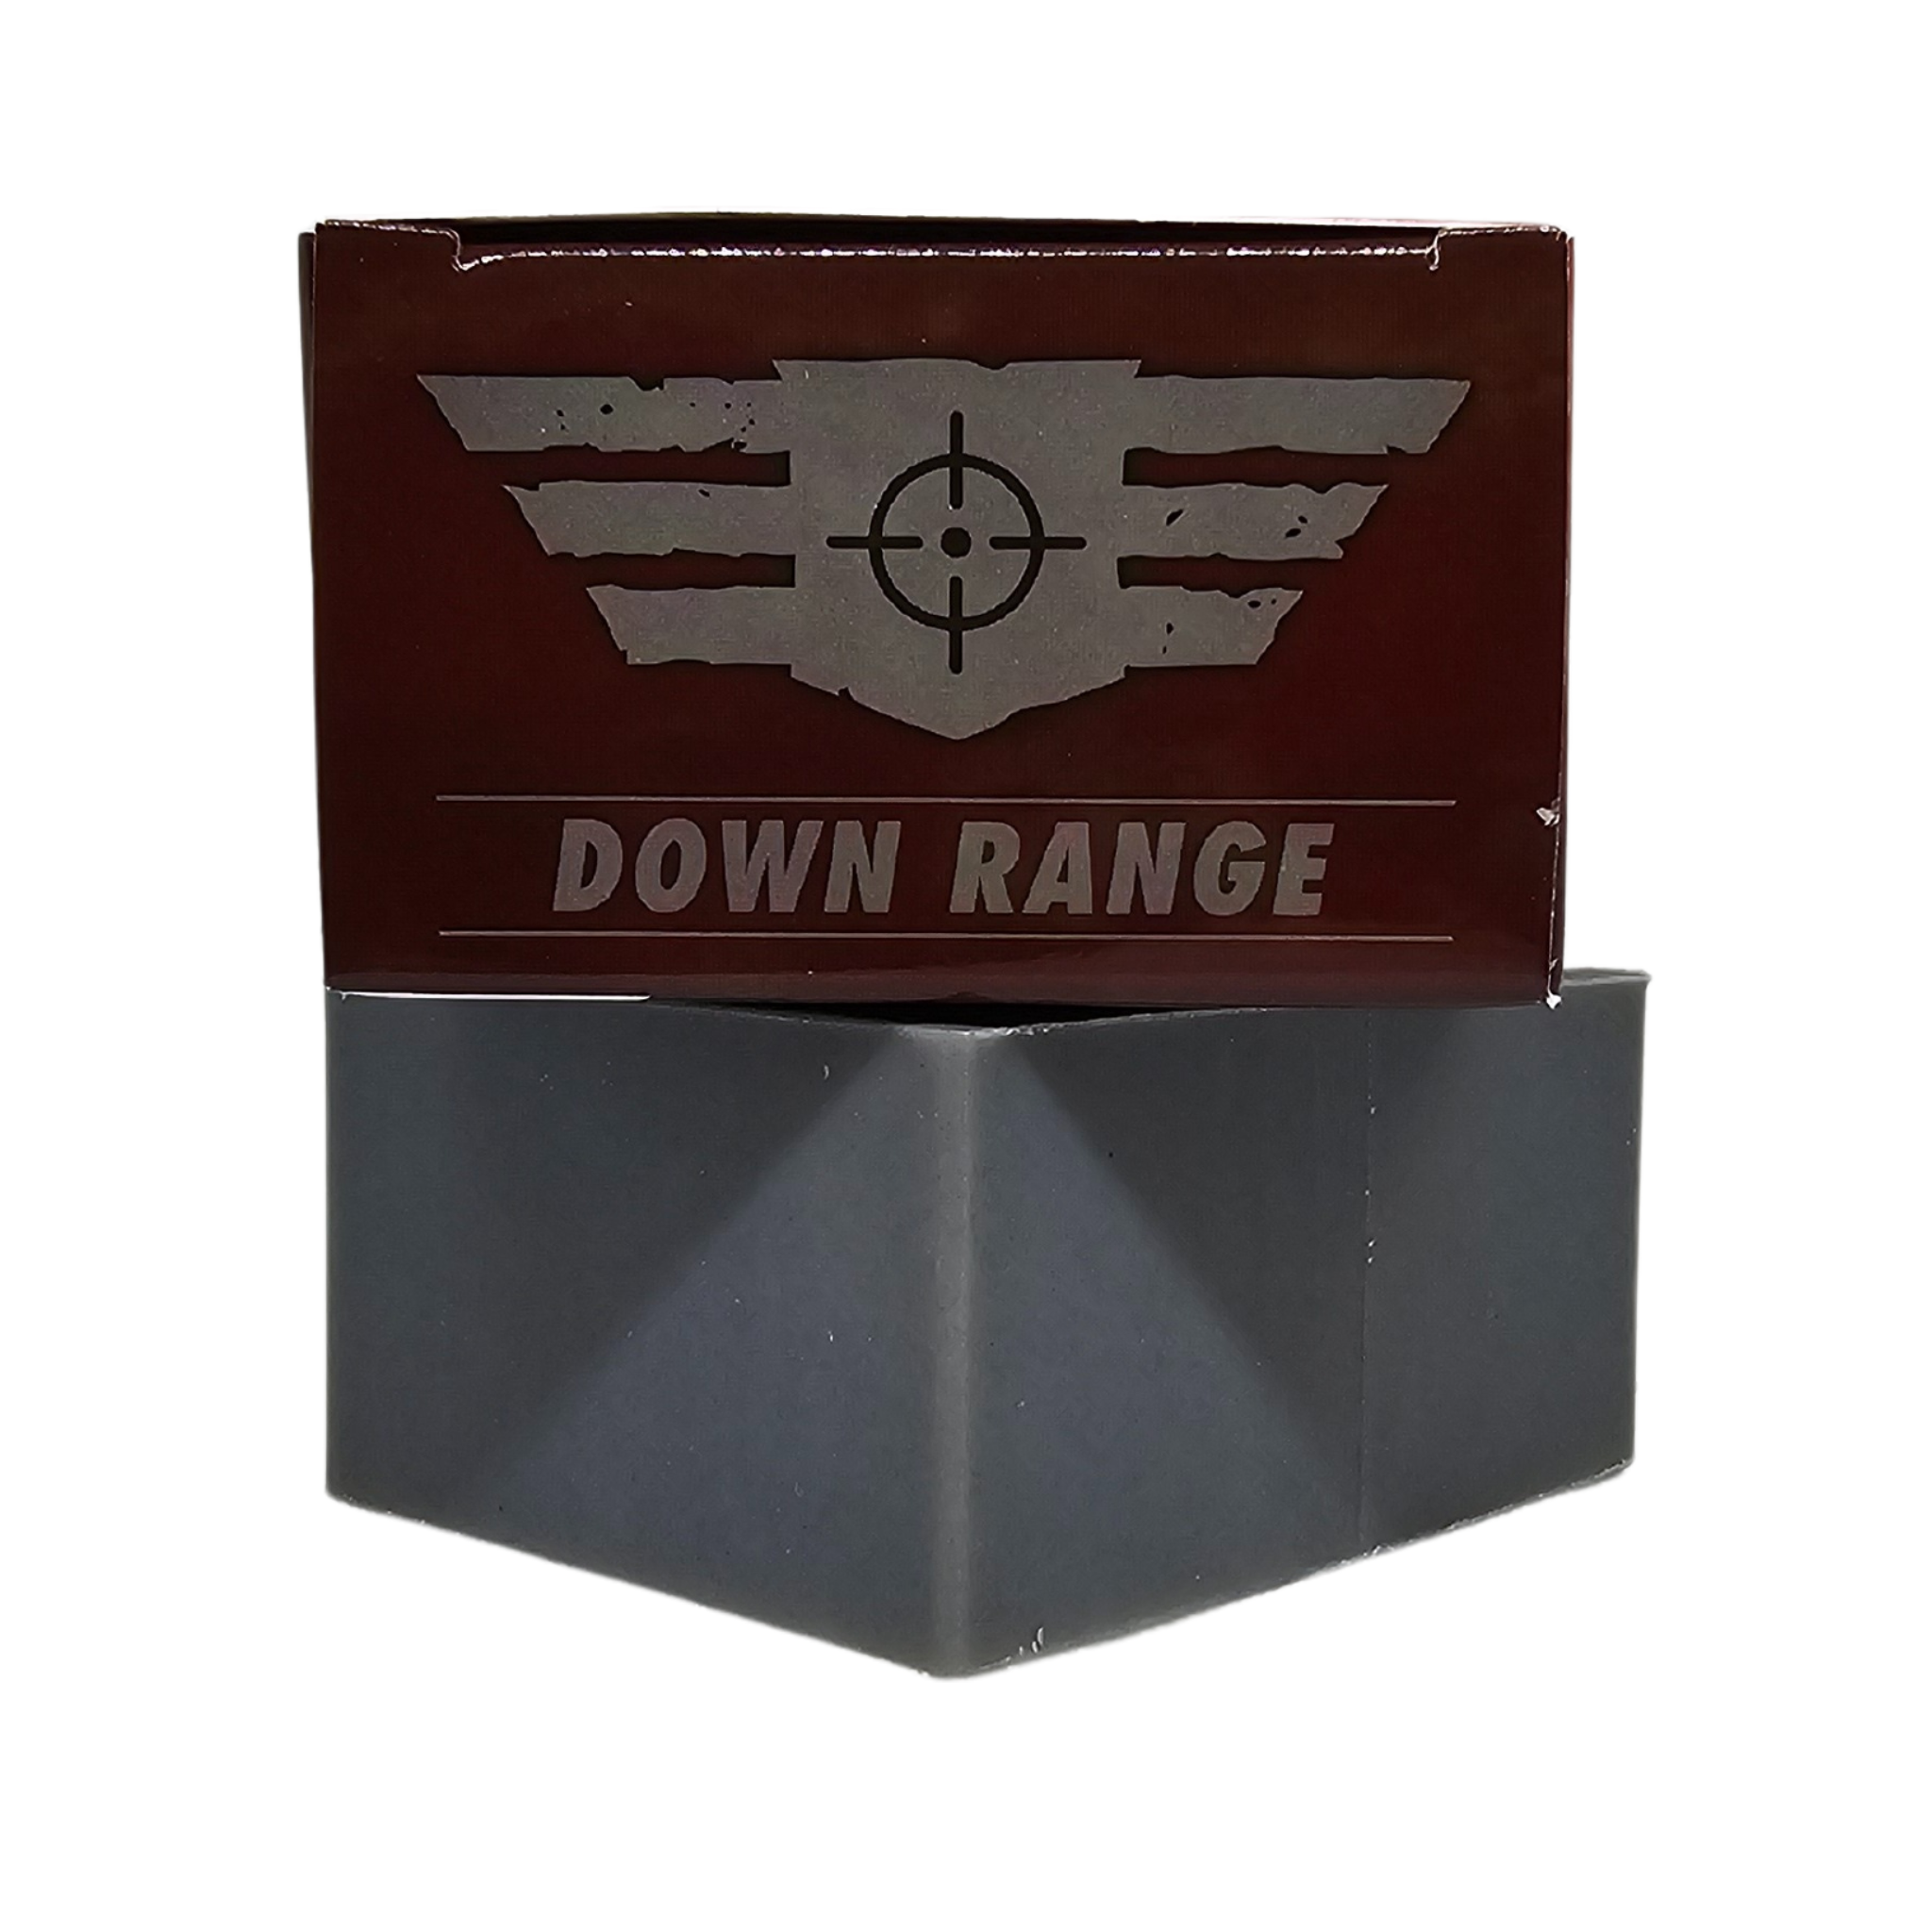 Down Range Natural Soap - Gun Powder - Patriot Mens Company